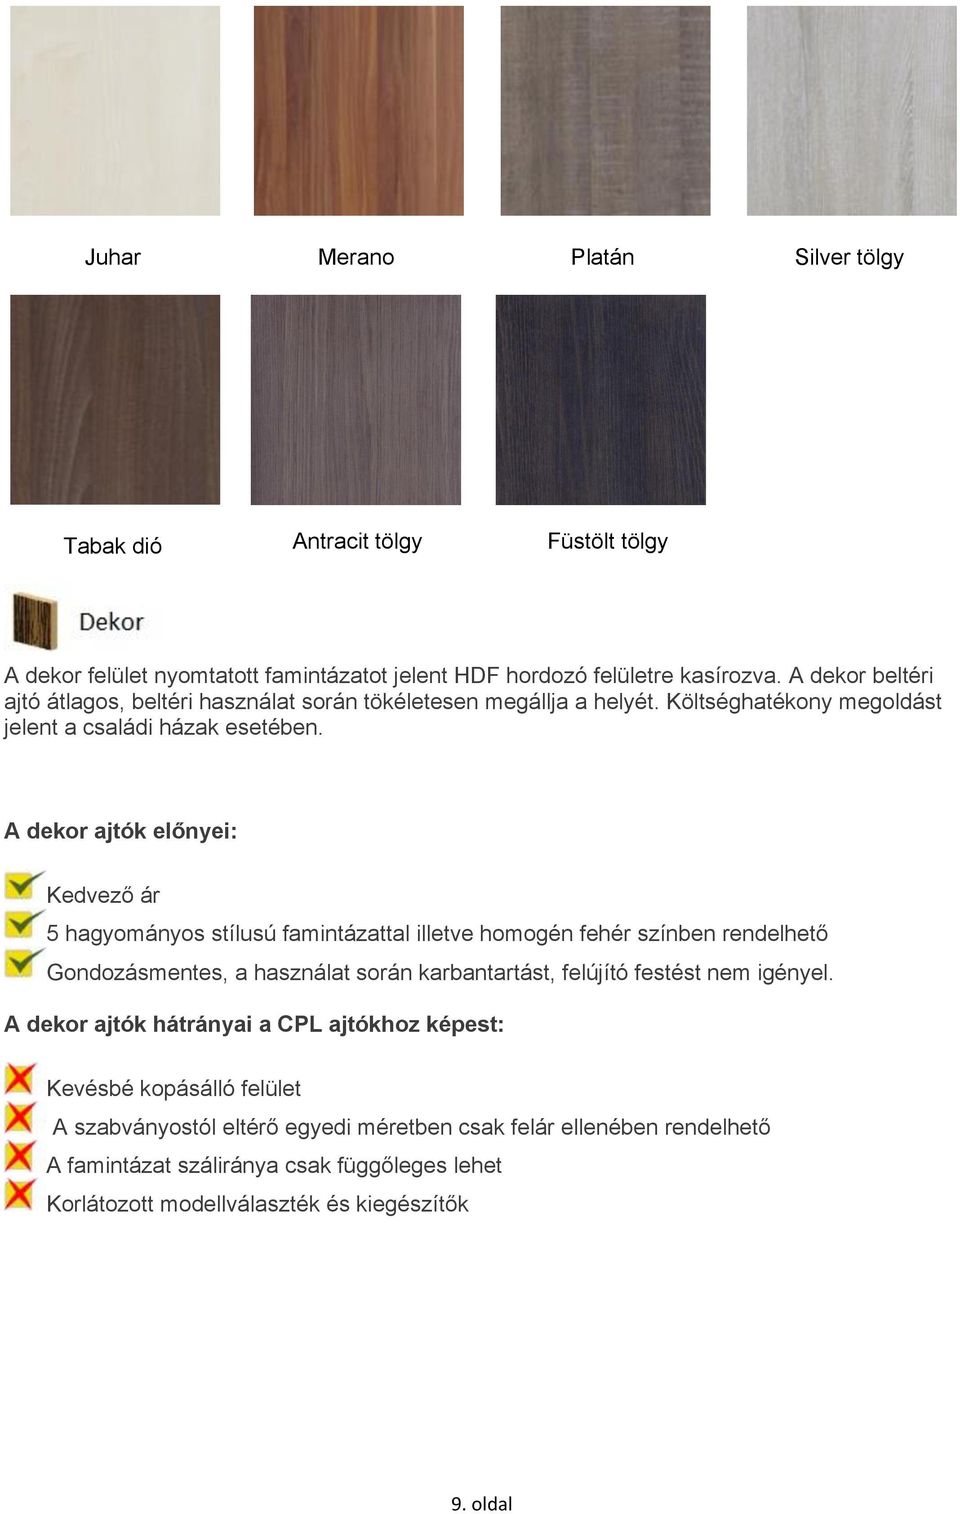 A dekor ajtók előnyei: Kedvező ár 5 hagyományos stílusú famintázattal illetve homogén fehér színben rendelhető Gondozásmentes, a használat során karbantartást, felújító festést nem